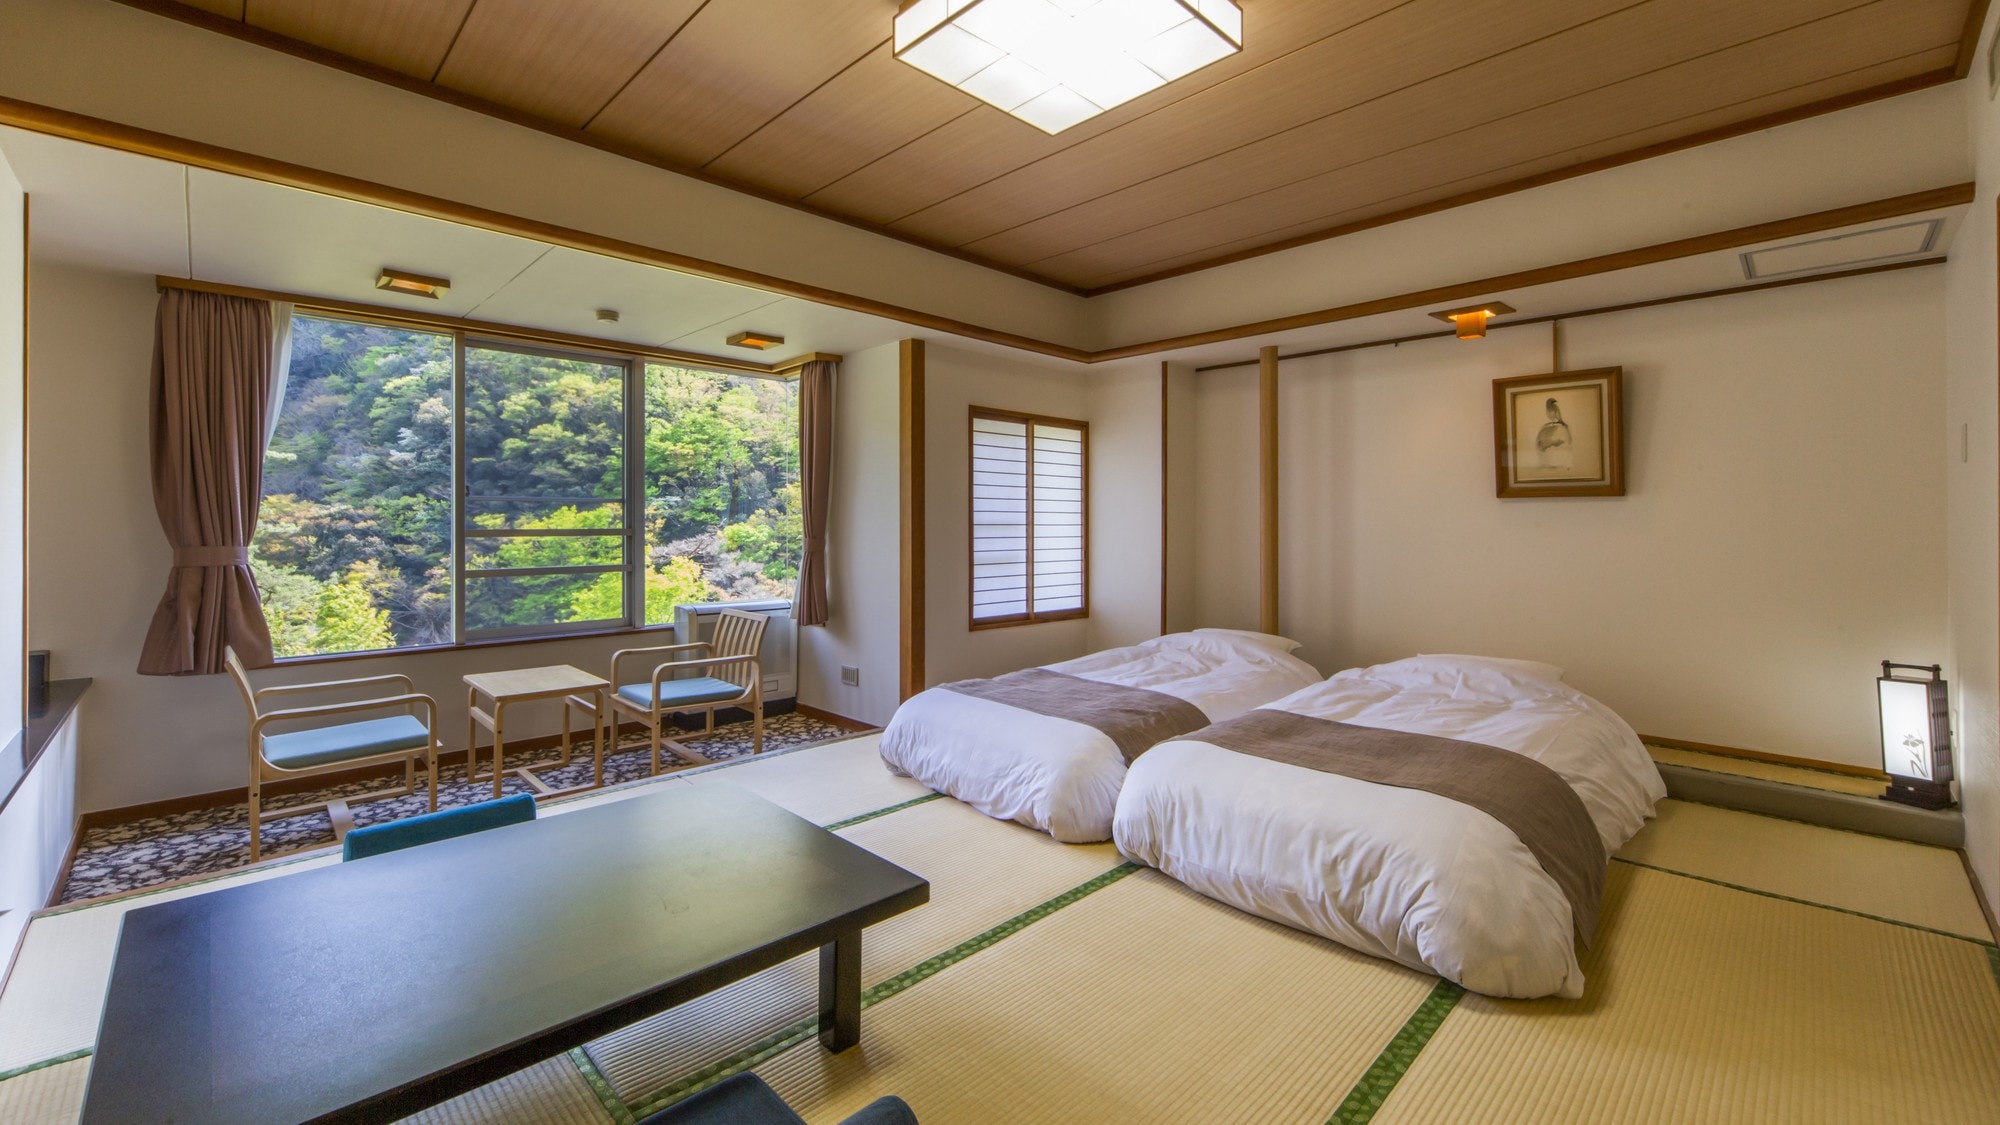 ห้องพักสไตล์ญี่ปุ่น เสื่อทาทามิ 10 ผืน / ห้องปลอดบุหรี่ แบบเตียงต่ำ